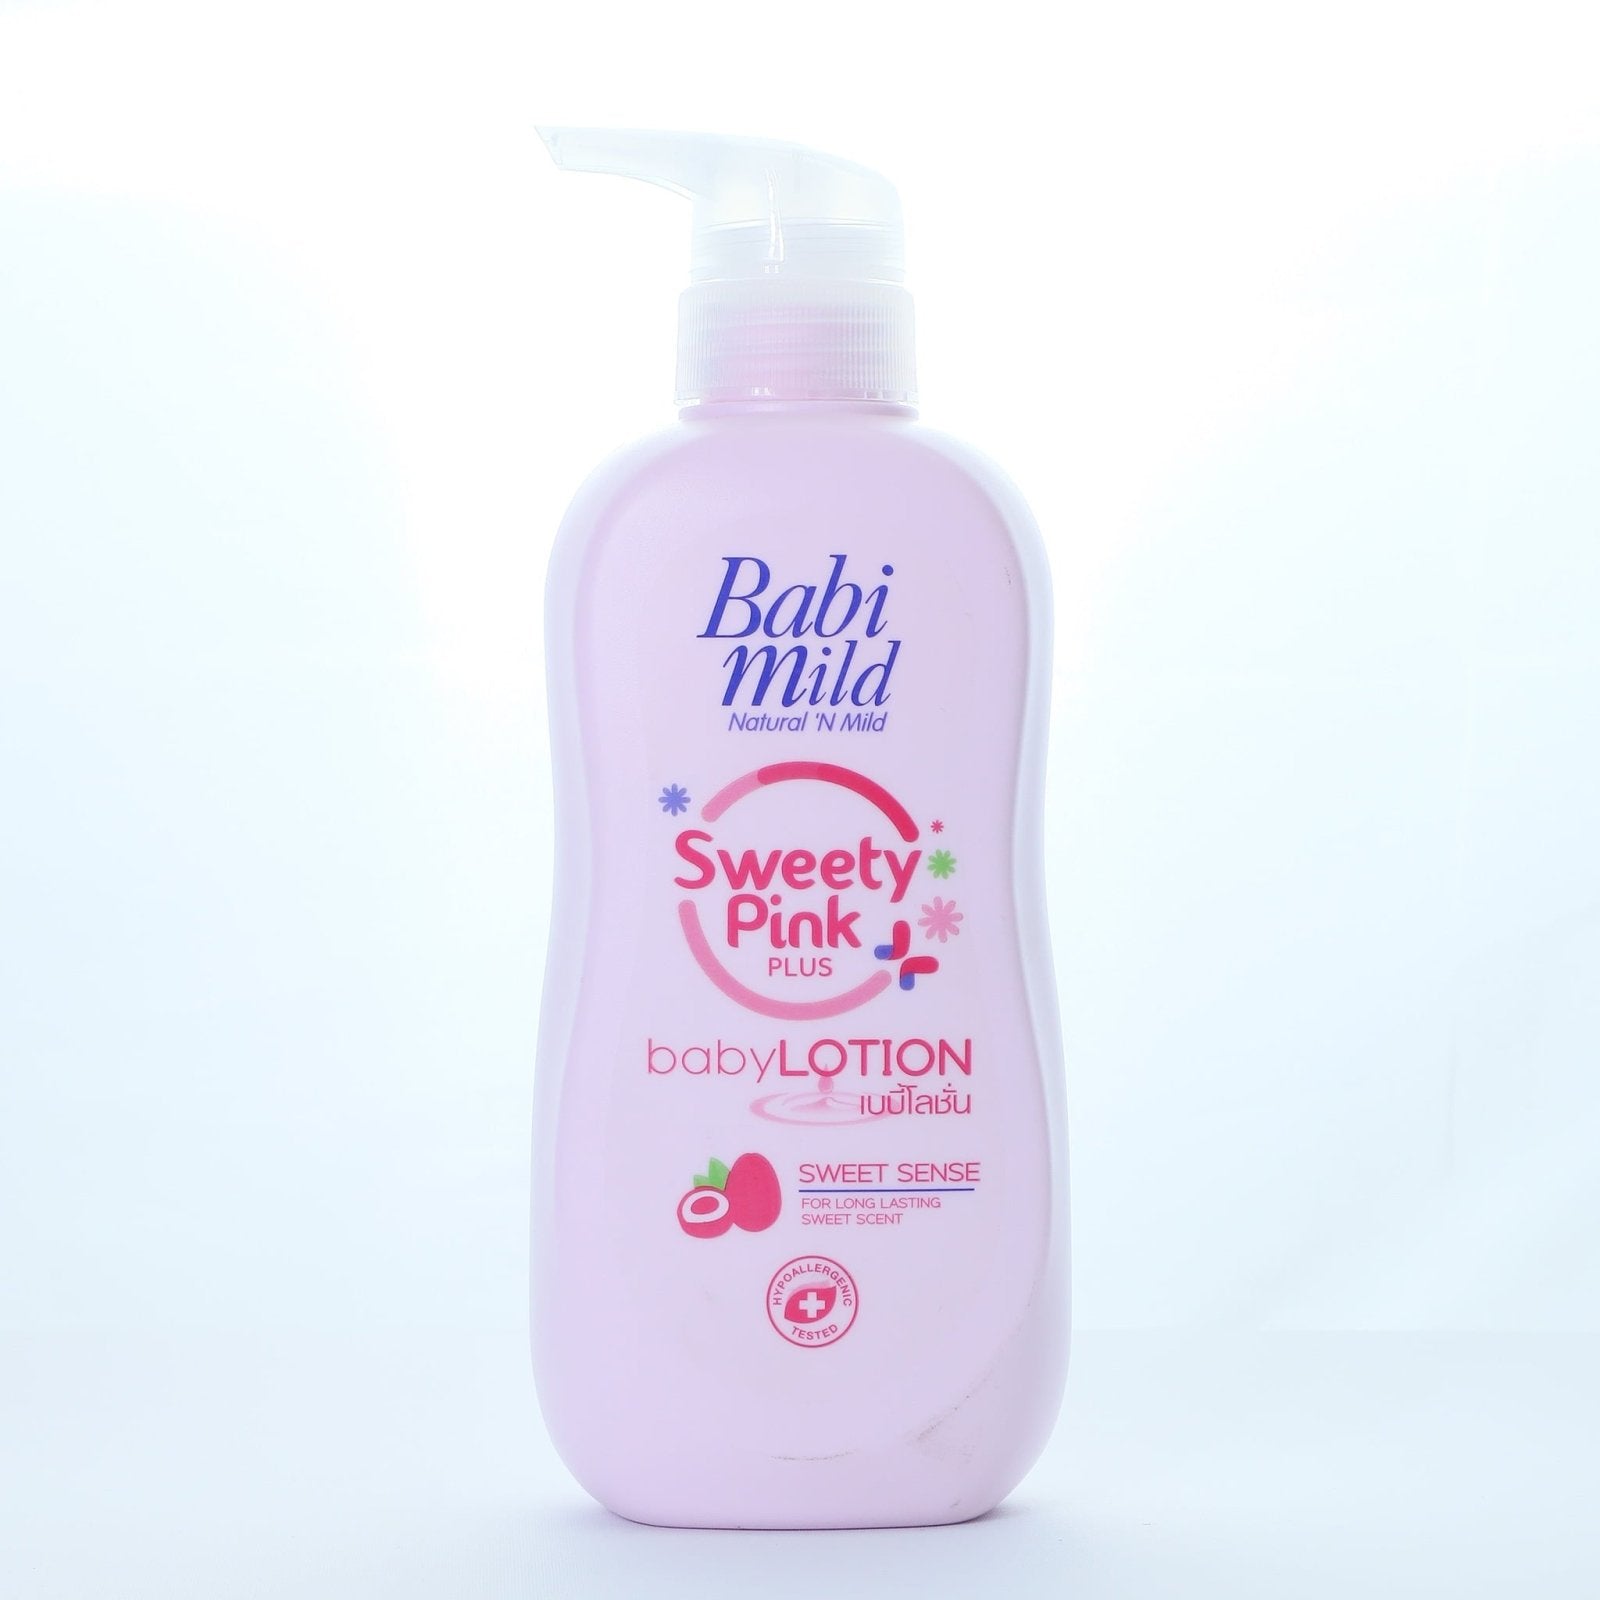 Baby Lotion Sweety Pink Plus 400ml | Babi Mild - Zubaidas Mothershop